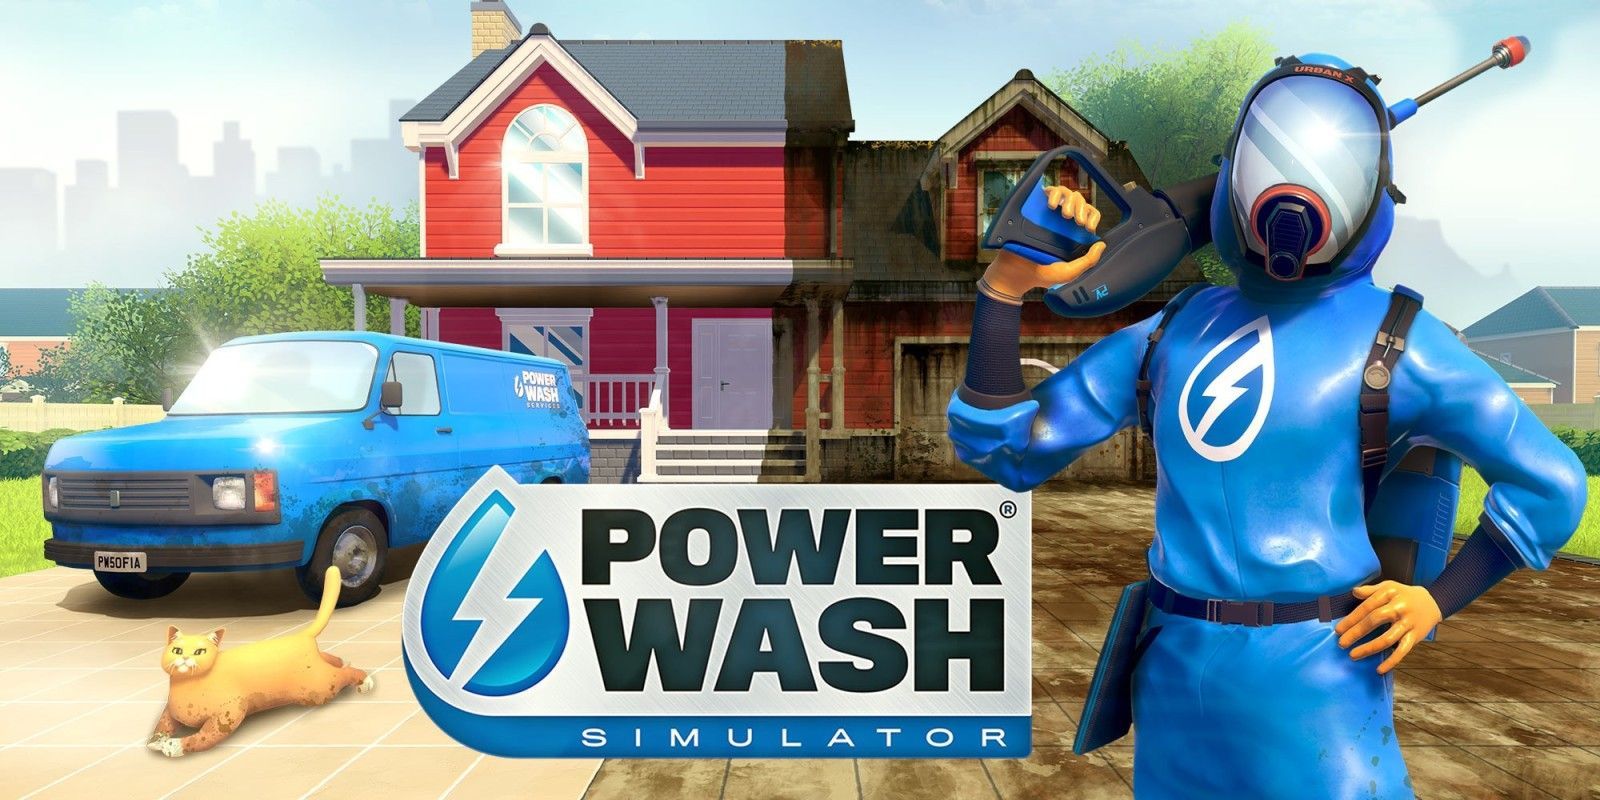 Powerwash Simulator - FuturLab fait le point sur la prochaine grosse mise à jour, la feuille de route ainsi que les versions physiques à venir - GEEKNPLAY Home, News, Nintendo Switch, PC, PlayStation 4, PlayStation 5, Xbox One, Xbox Series X|S